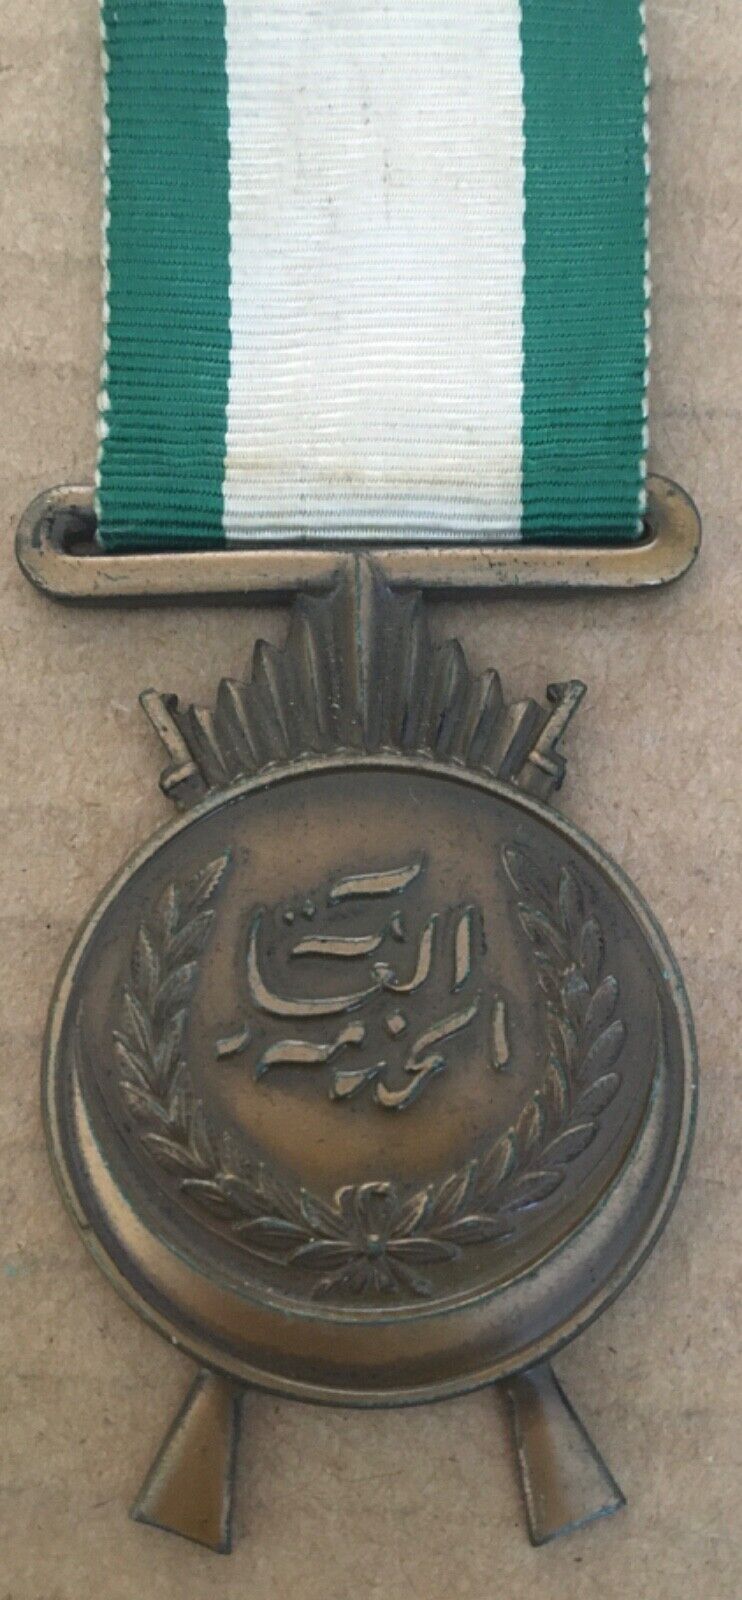 1926 Kingdom of Iraq General Service Medal Nut lil Shurta al-Khidmat Al-Awal